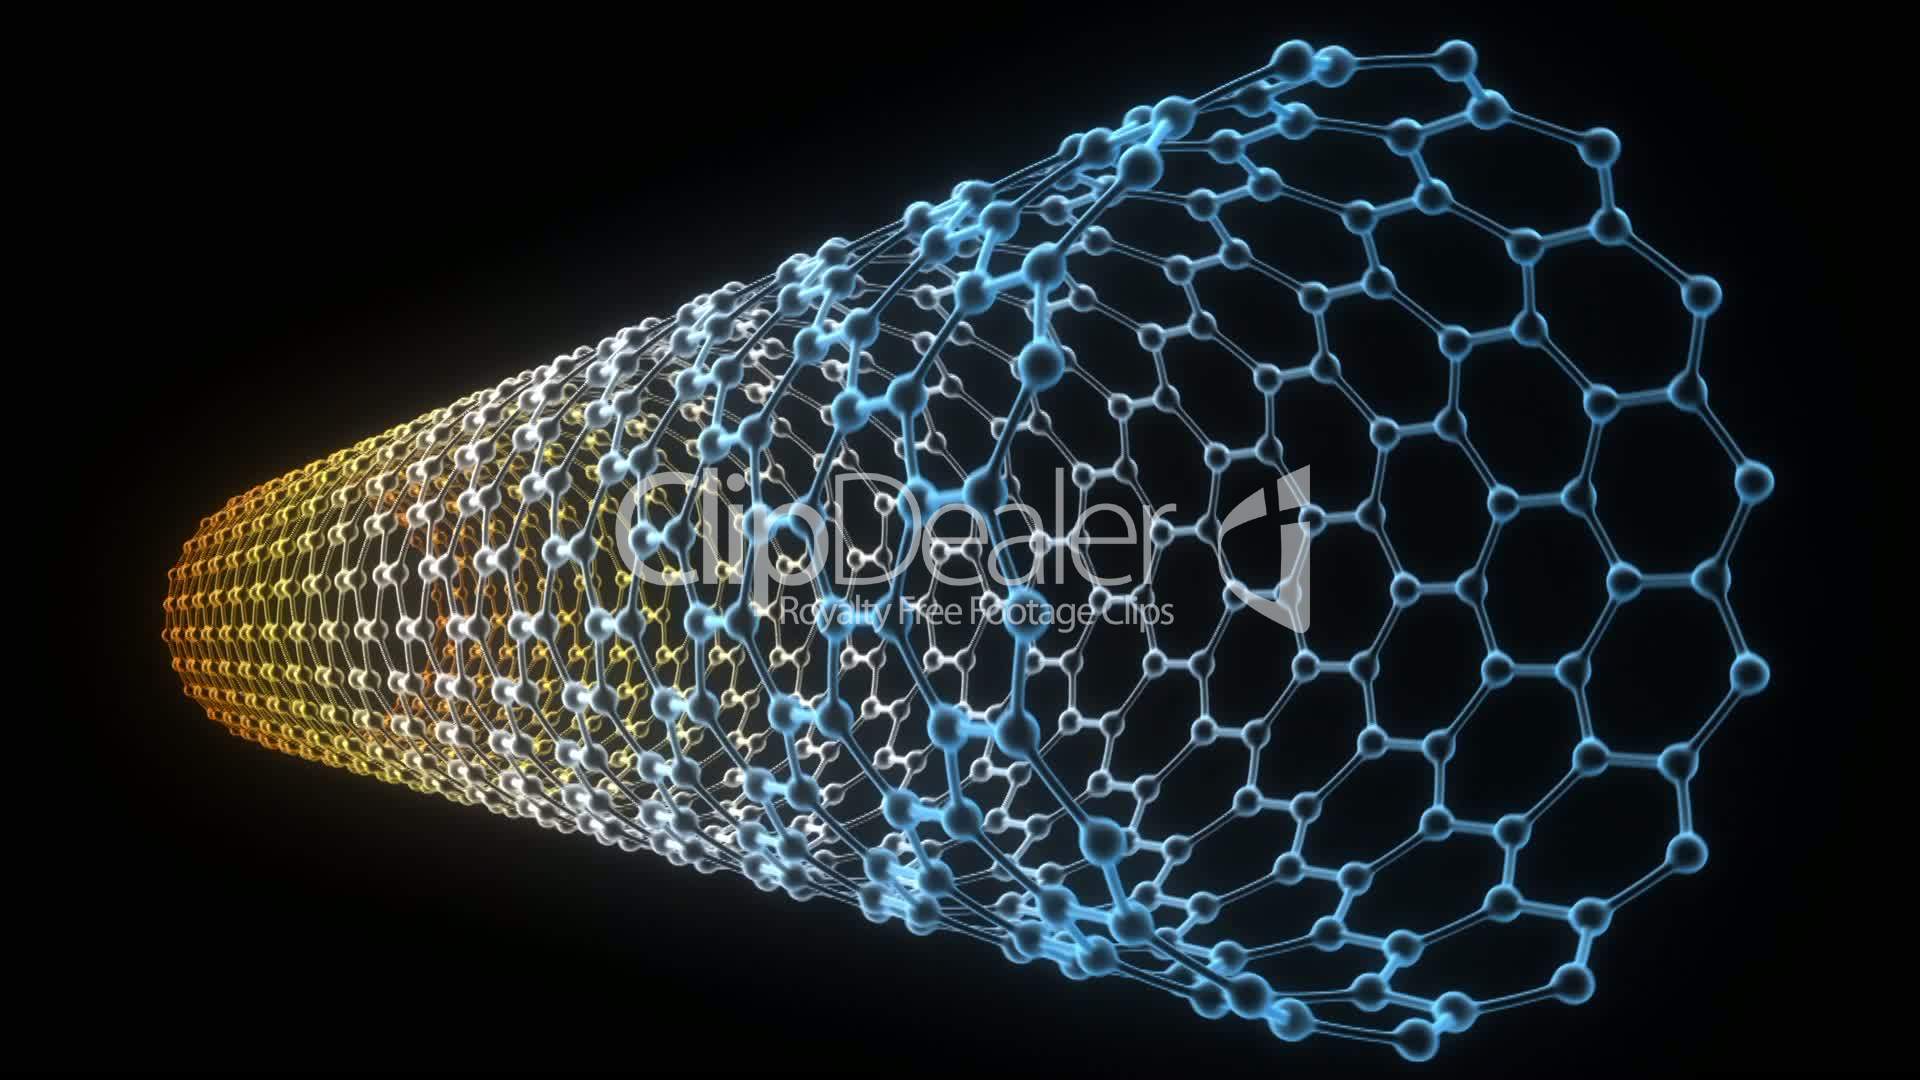 nms carbon nanotubes